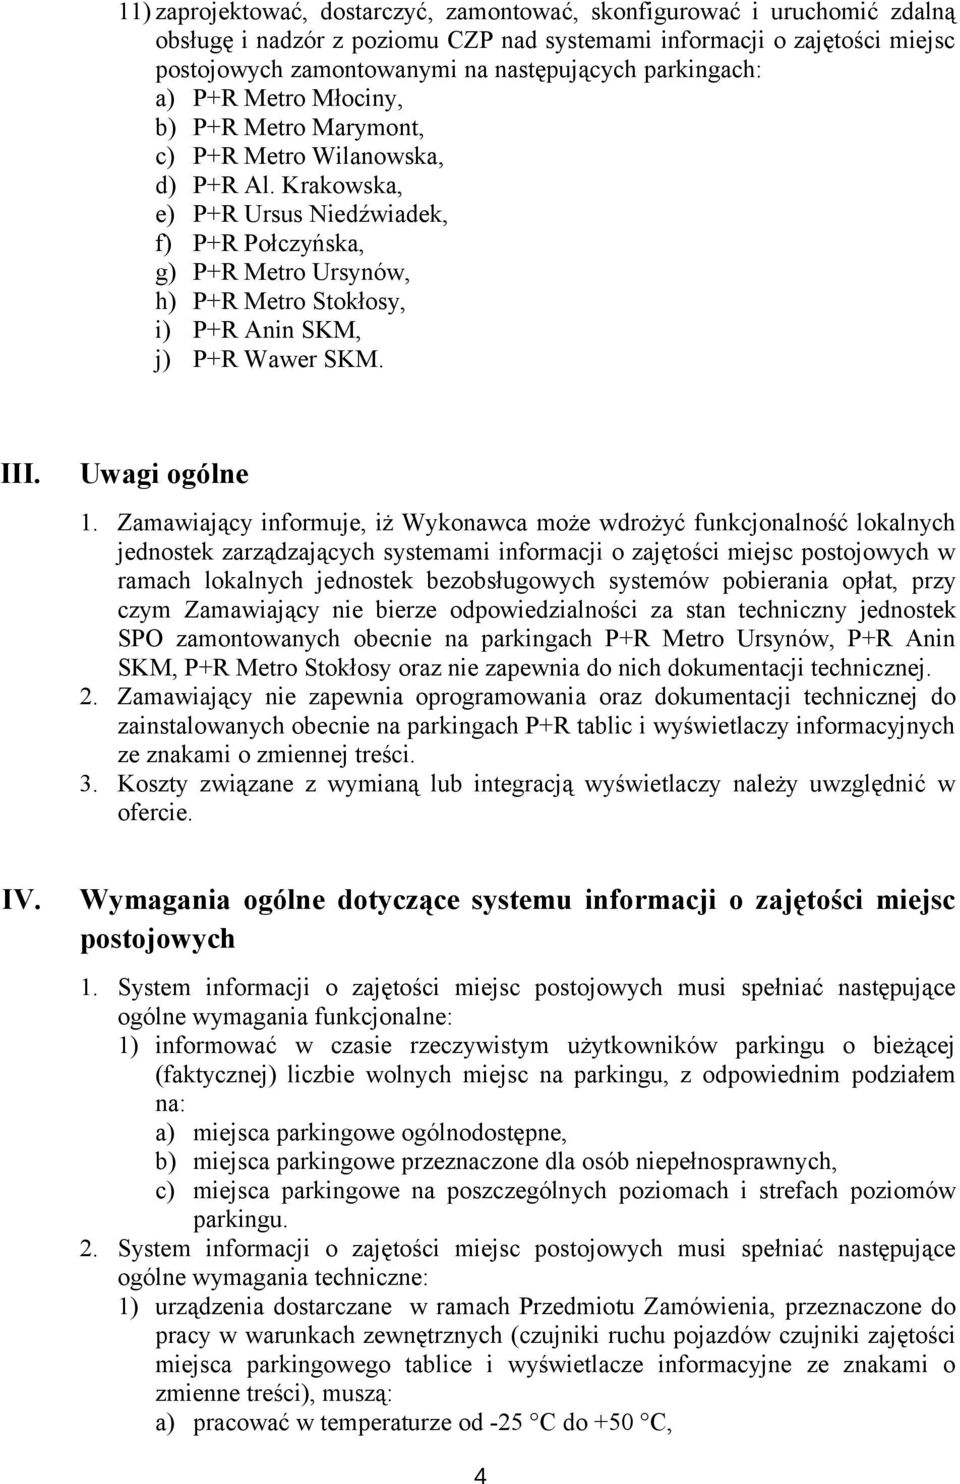 Krakowska, e) P+R Ursus Niedźwiadek, f) P+R Połczyńska, g) P+R Metro Ursynów, h) P+R Metro Stokłosy, i) P+R Anin SKM, j) P+R Wawer SKM. III. Uwagi ogólne 1.